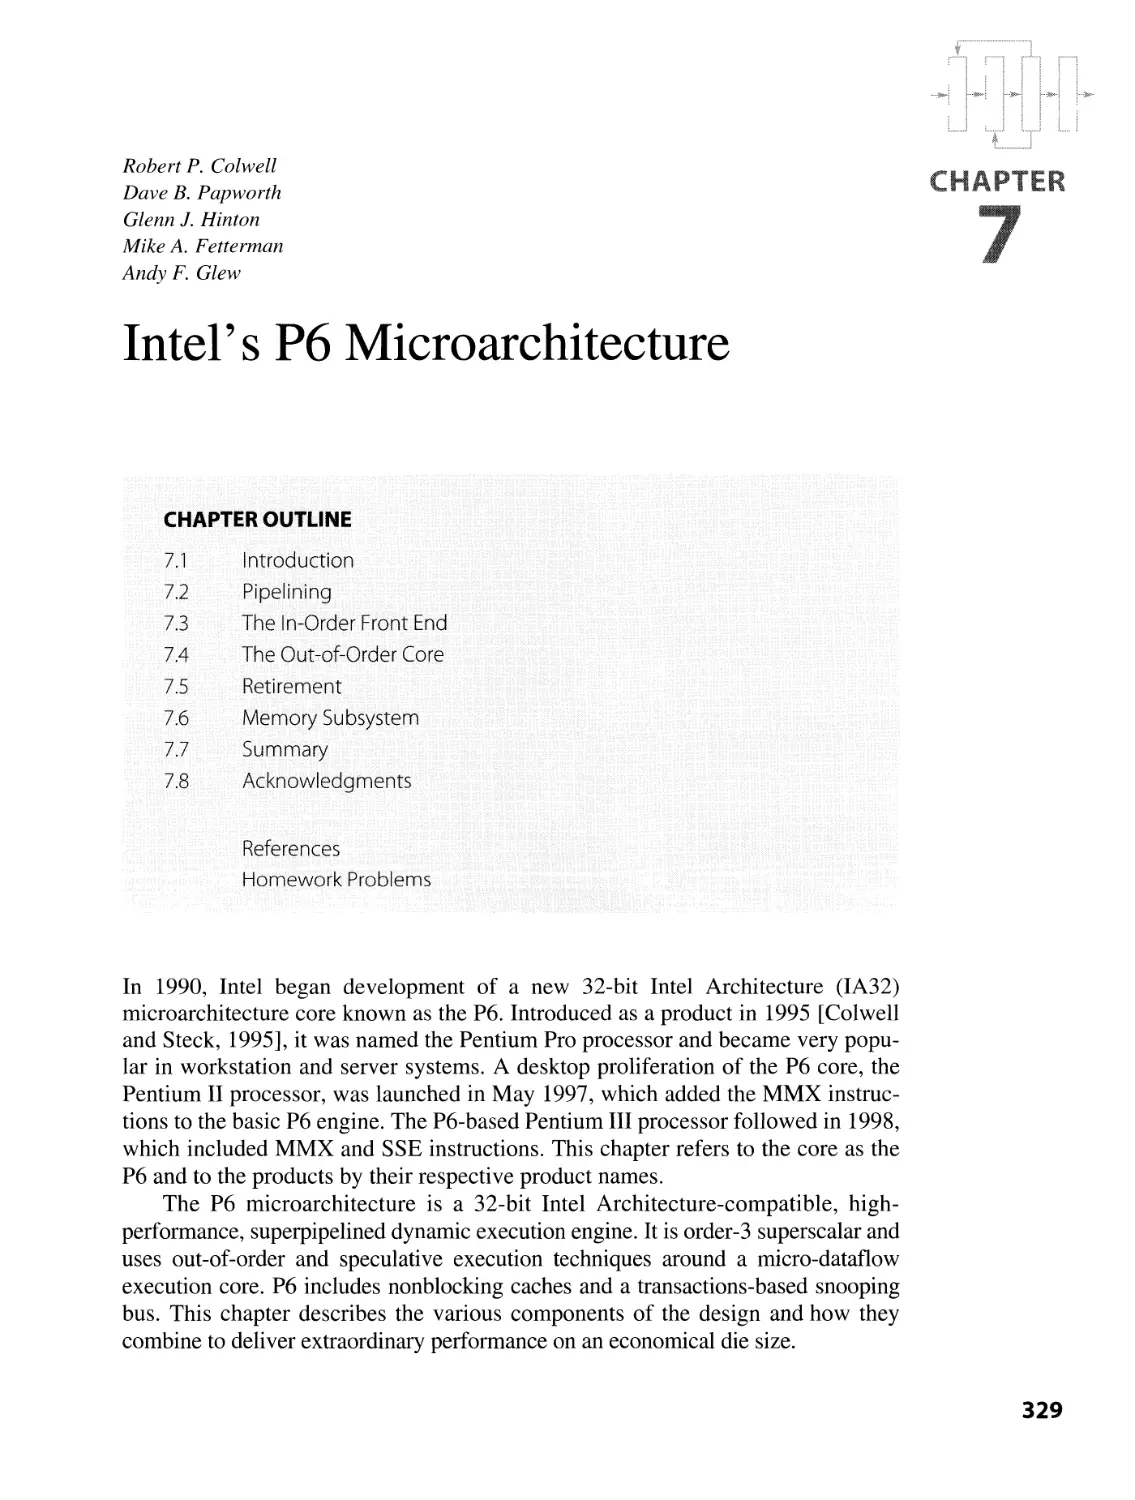 7. Intel's P6 Microarchitecture